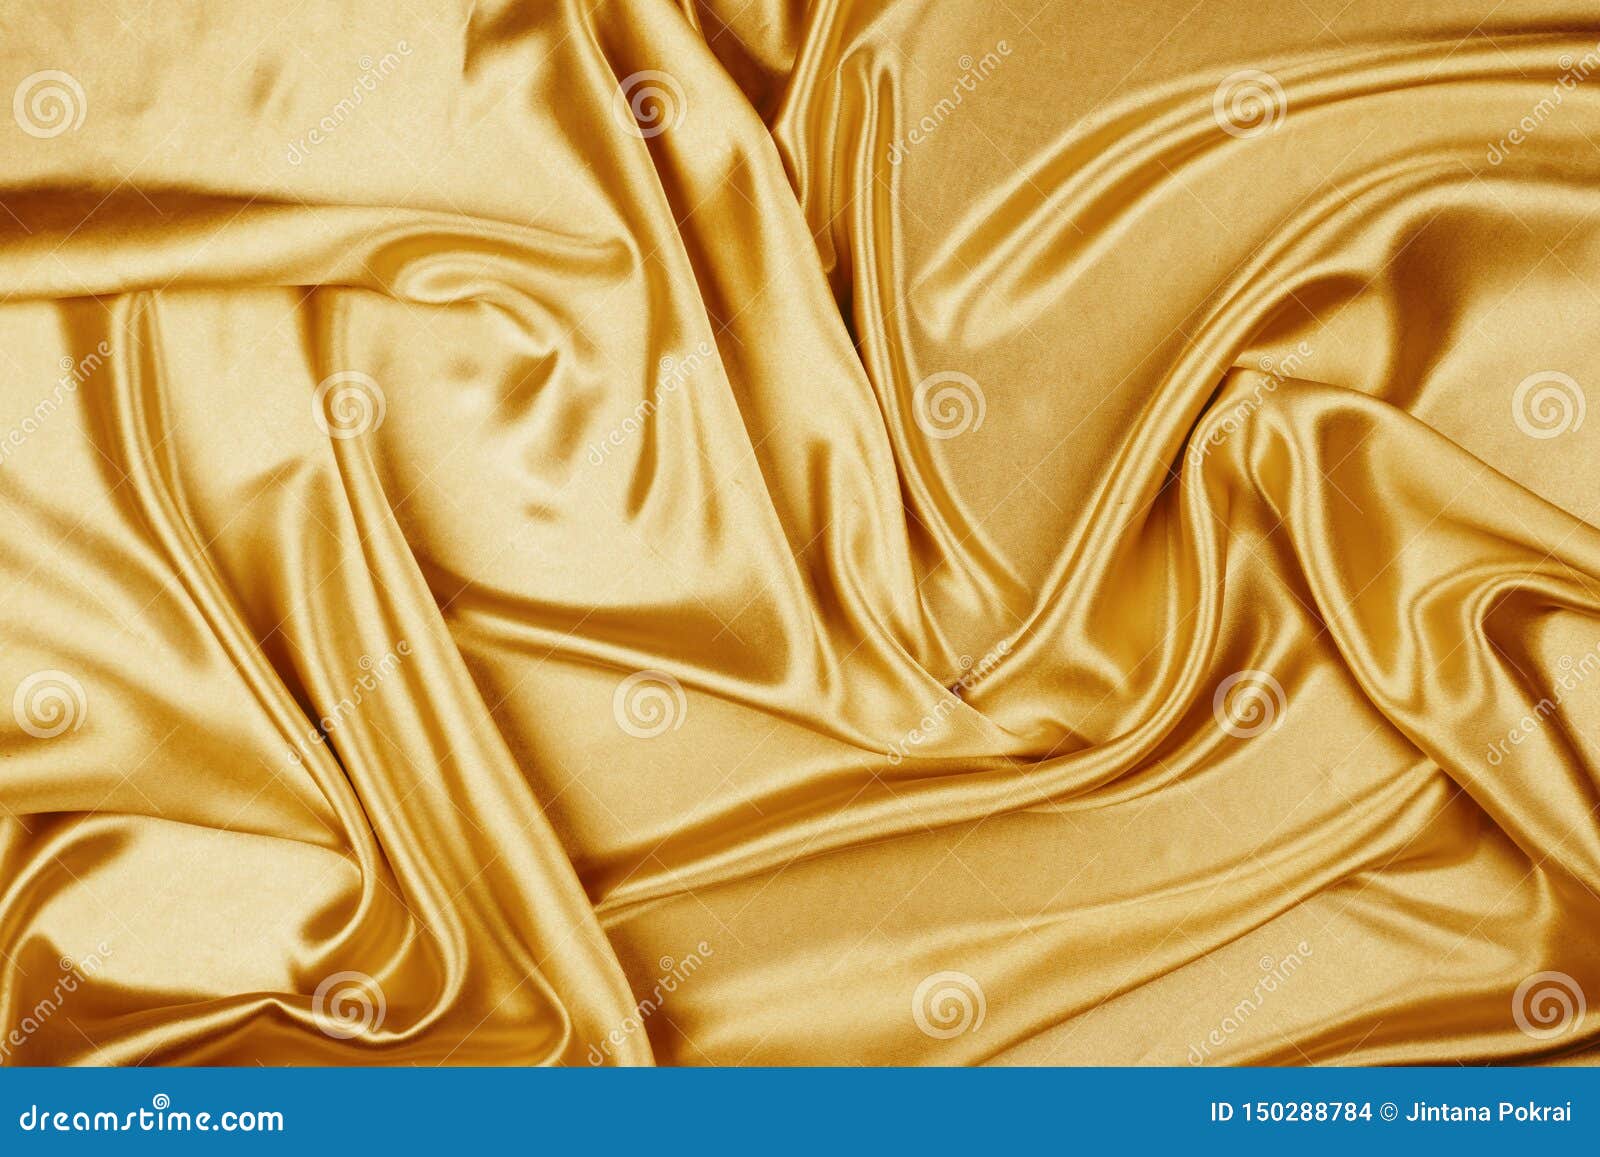 Bạn đang tìm kiếm một texture vải lụa sang trọng màu vàng để làm nền cho ảnh của mình? Texture vải lụa màu vàng sẽ mang đến cho bạn sự trang nhã, sang trọng. Bạn có thể sử dụng nó trong các bài viết, thiết kế về thời trang hay trong các sản phẩm quảng cáo, cho hiệu quả tuyệt vời.